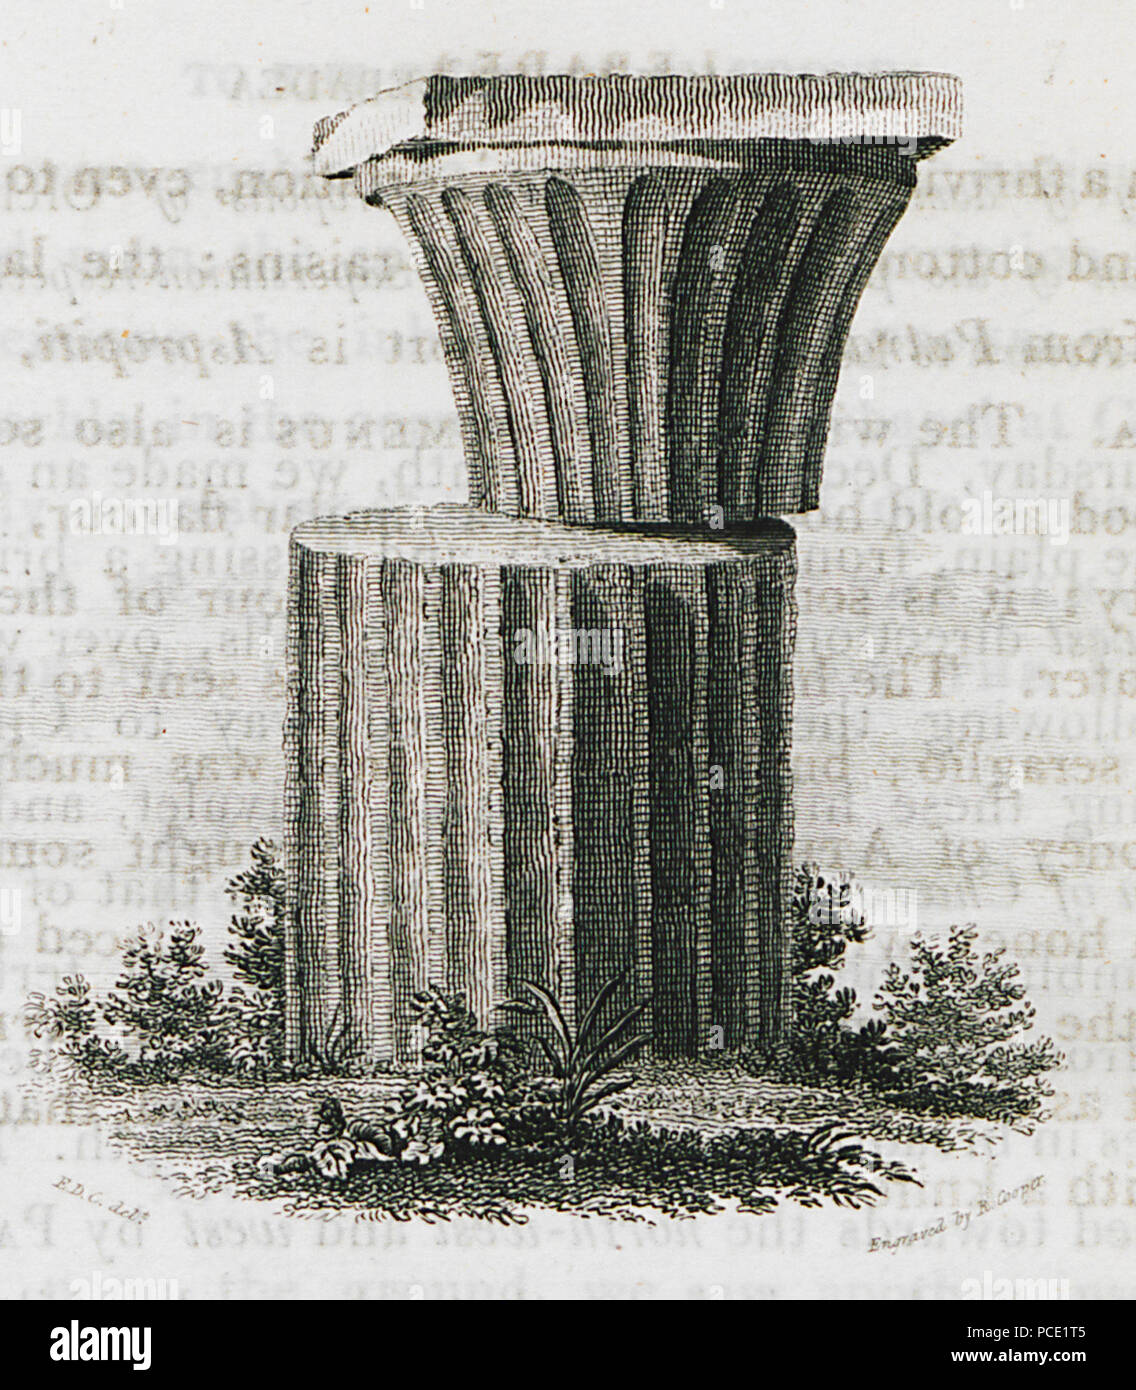 1 (Singular prüfstücks der griechischen Architektur) - Clarke Edward Daniel - 1816 Stockfoto